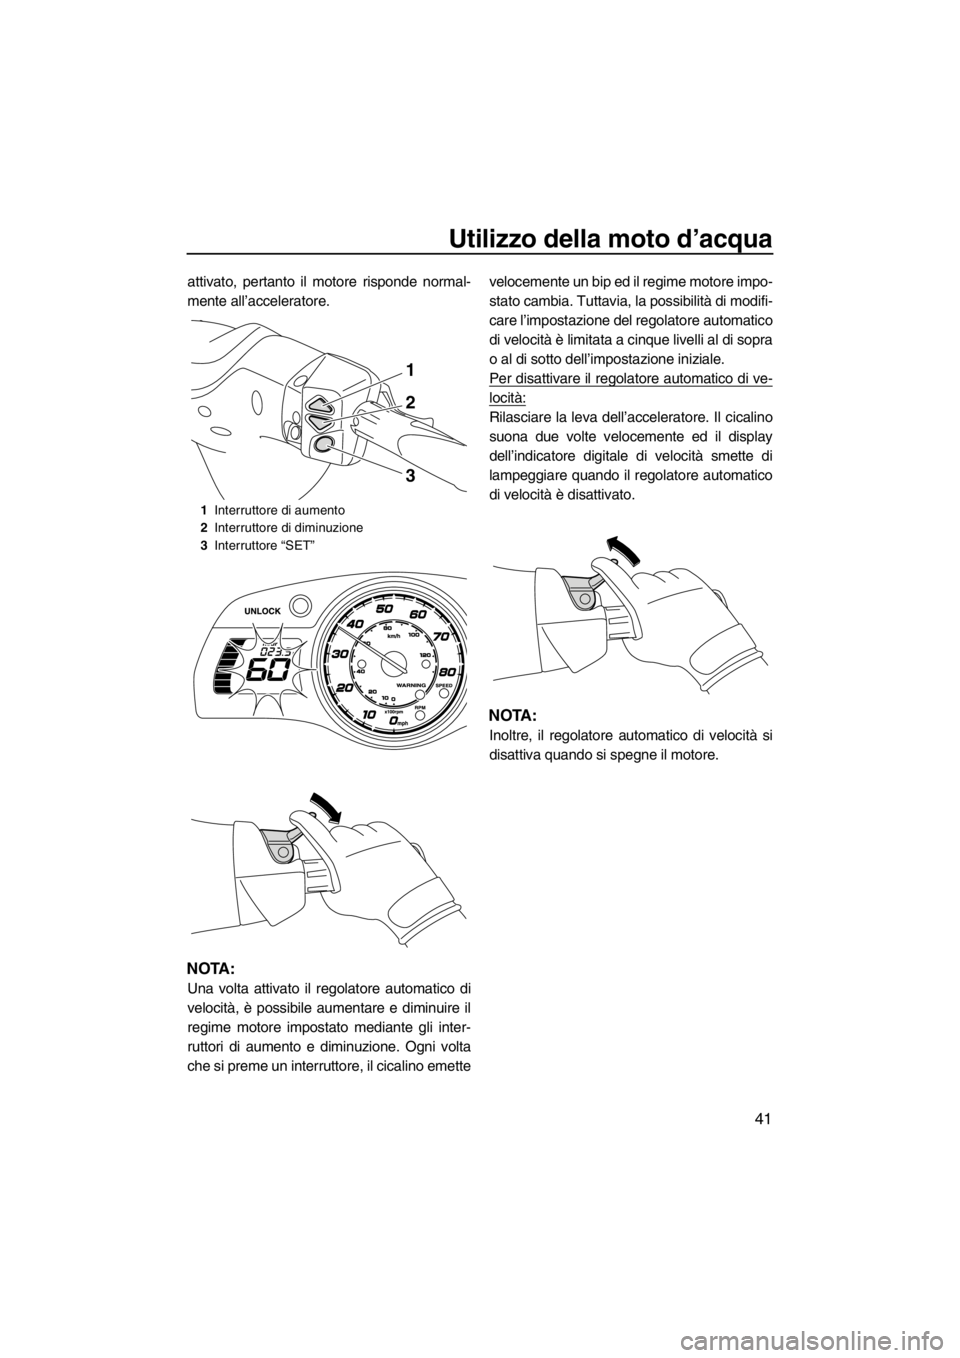 YAMAHA FX SHO 2012  Manuale duso (in Italian) Utilizzo della moto d’acqua
41
attivato, pertanto il motore risponde normal-
mente all’acceleratore.
NOTA:
Una volta attivato il regolatore automatico di
velocità, è possibile aumentare e diminu